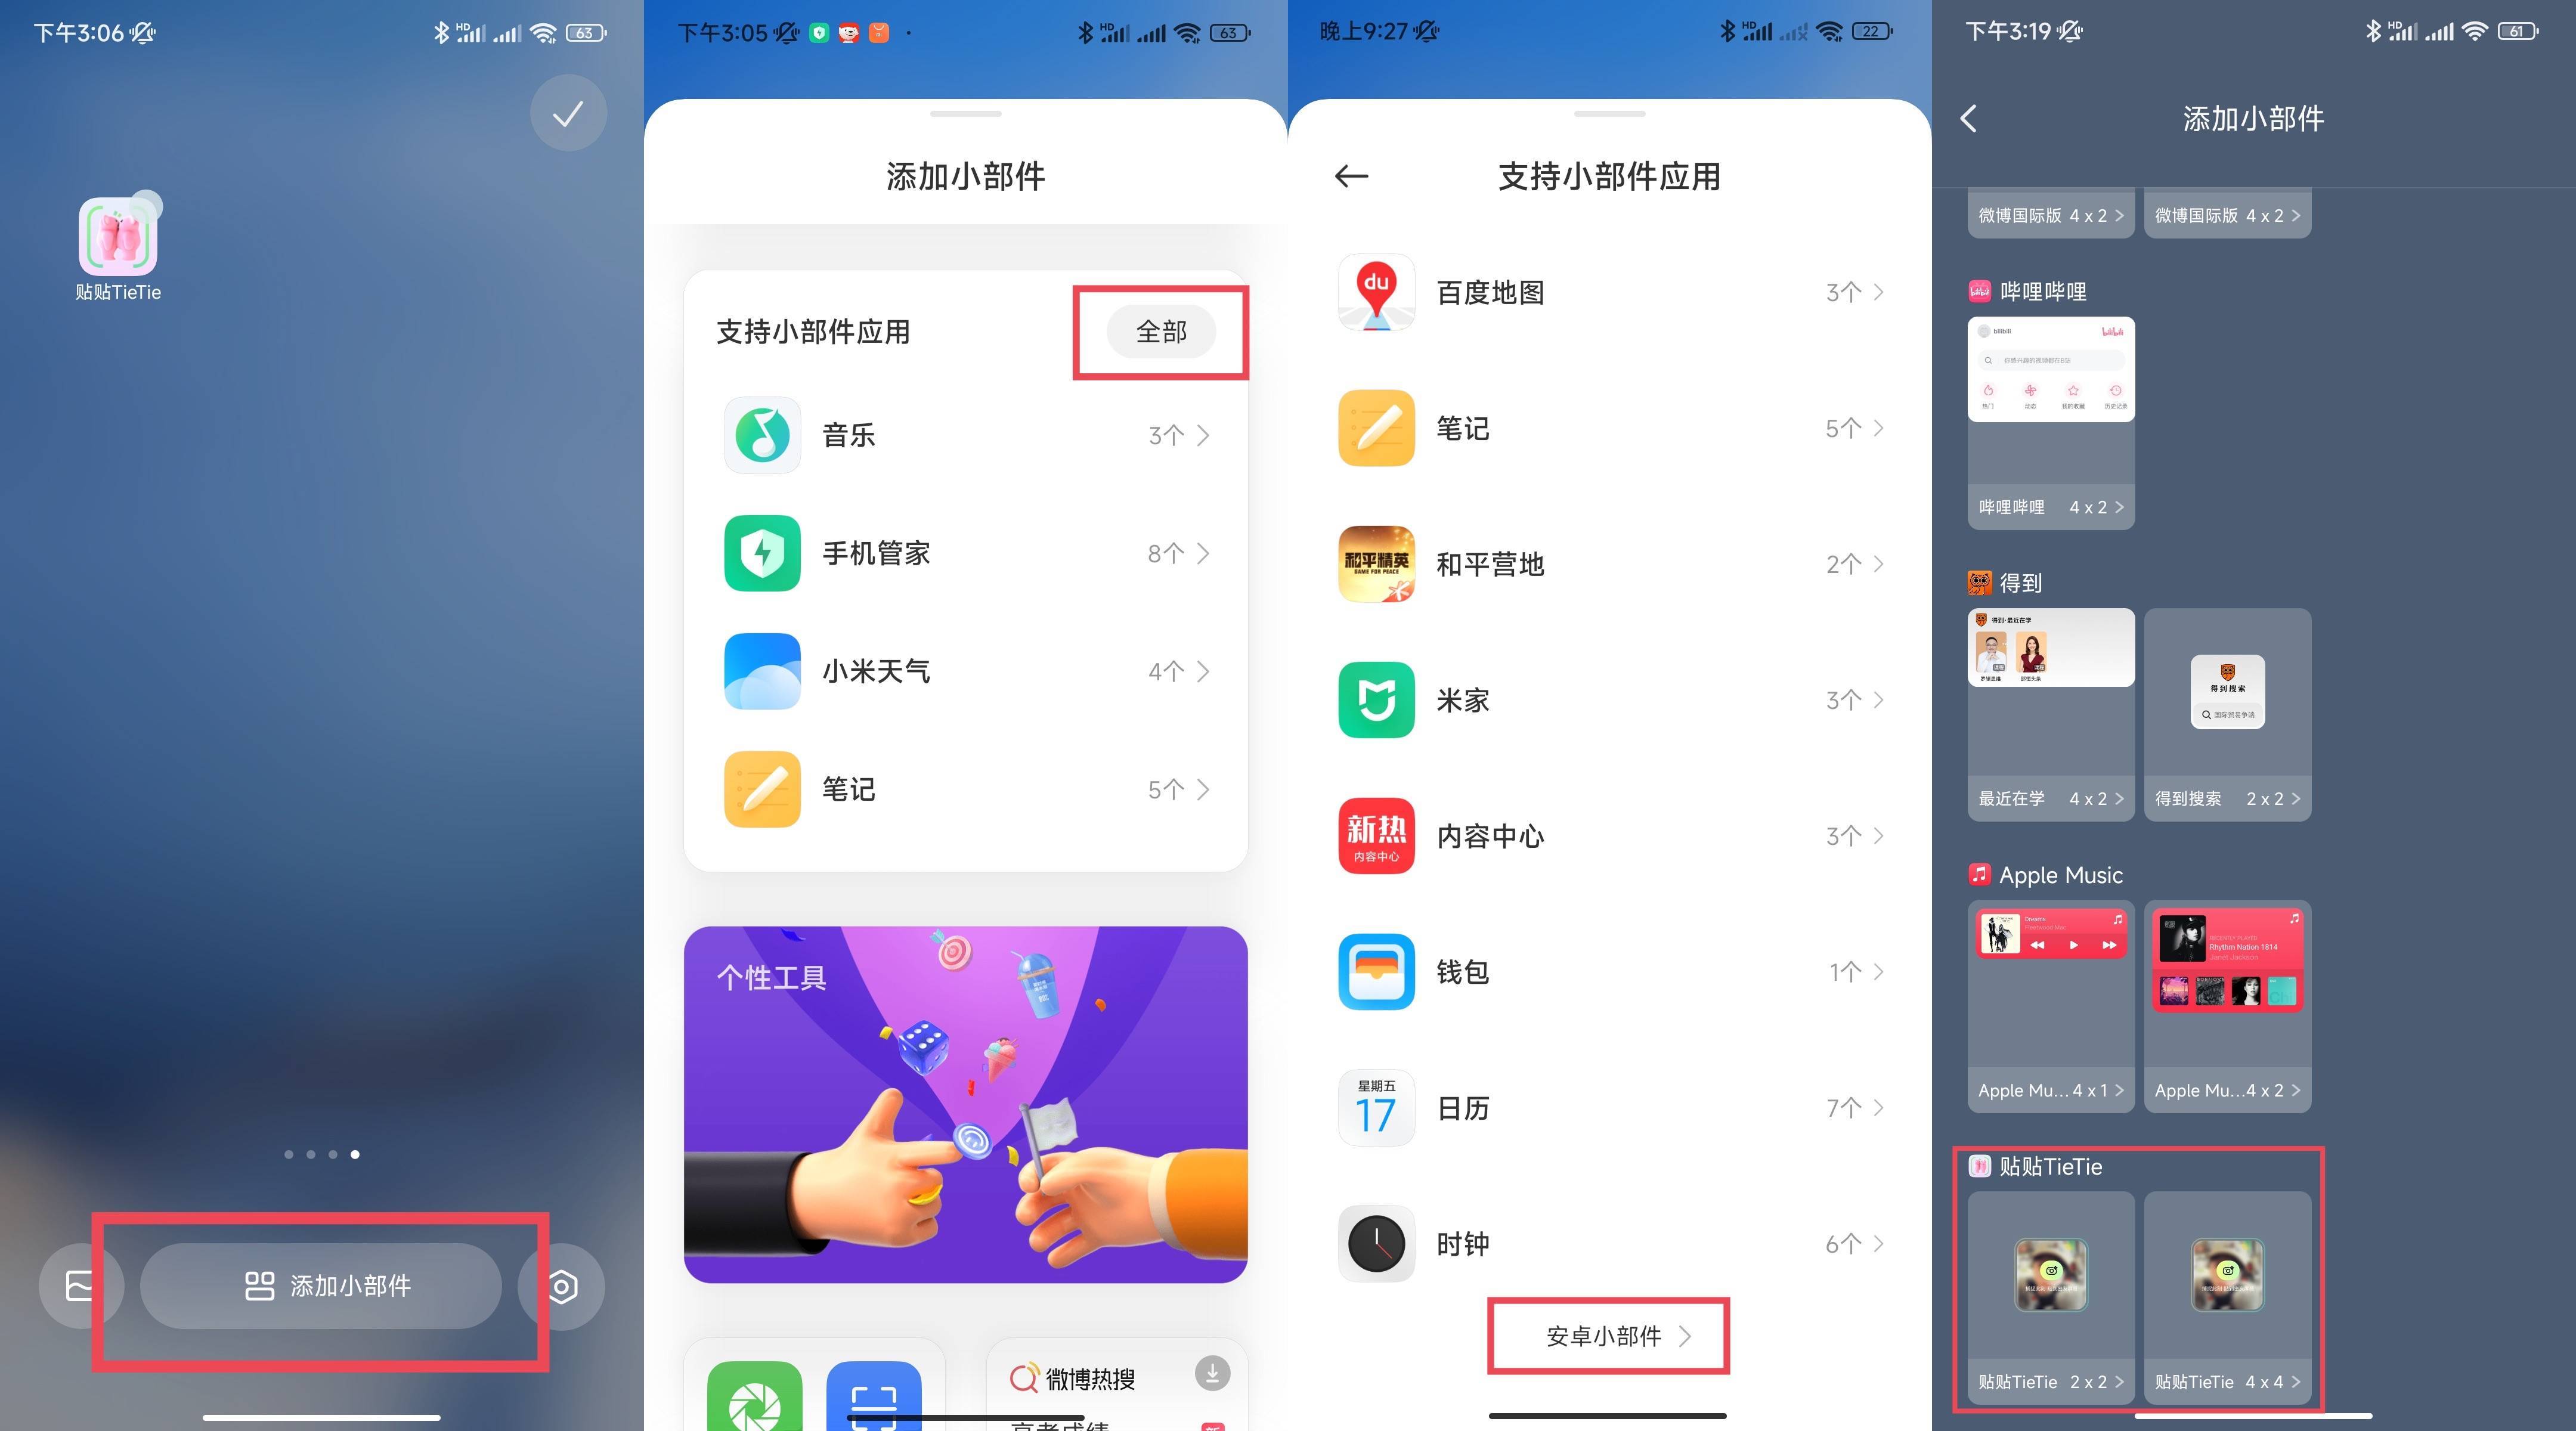 《贴贴》livein连续5天霸榜美区app免费榜